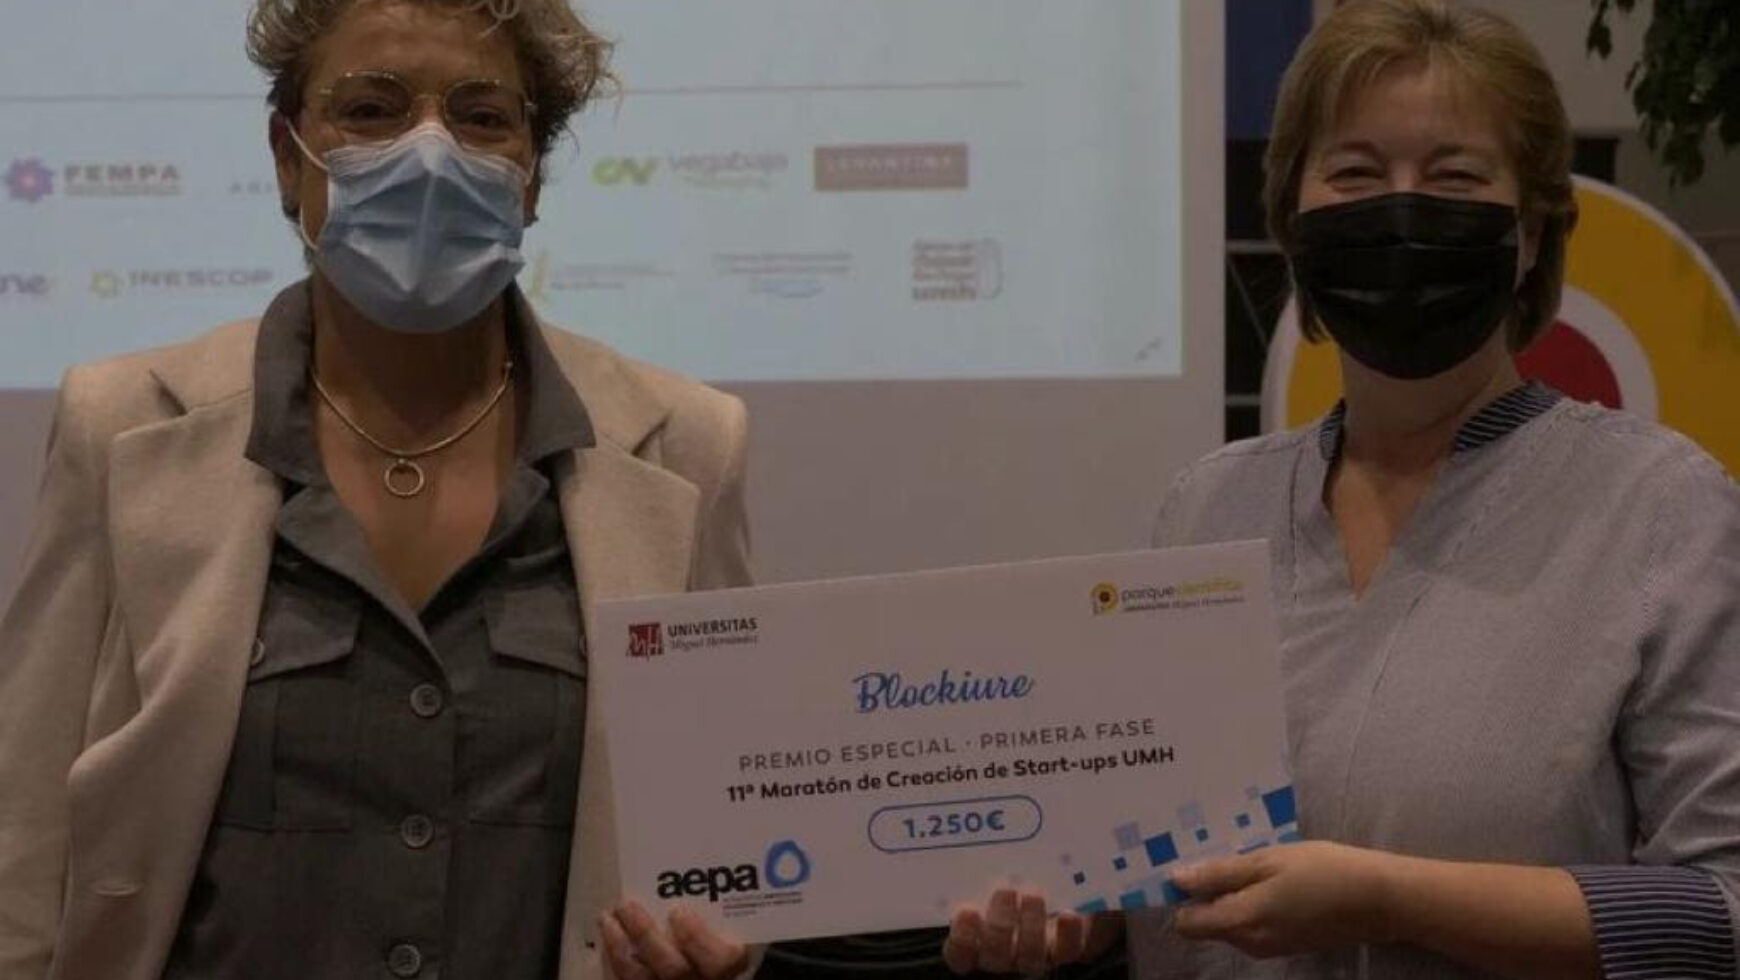 Presentación del premio AEPA en la 11ª Maratón de Creación de Start-ups de la UMH.